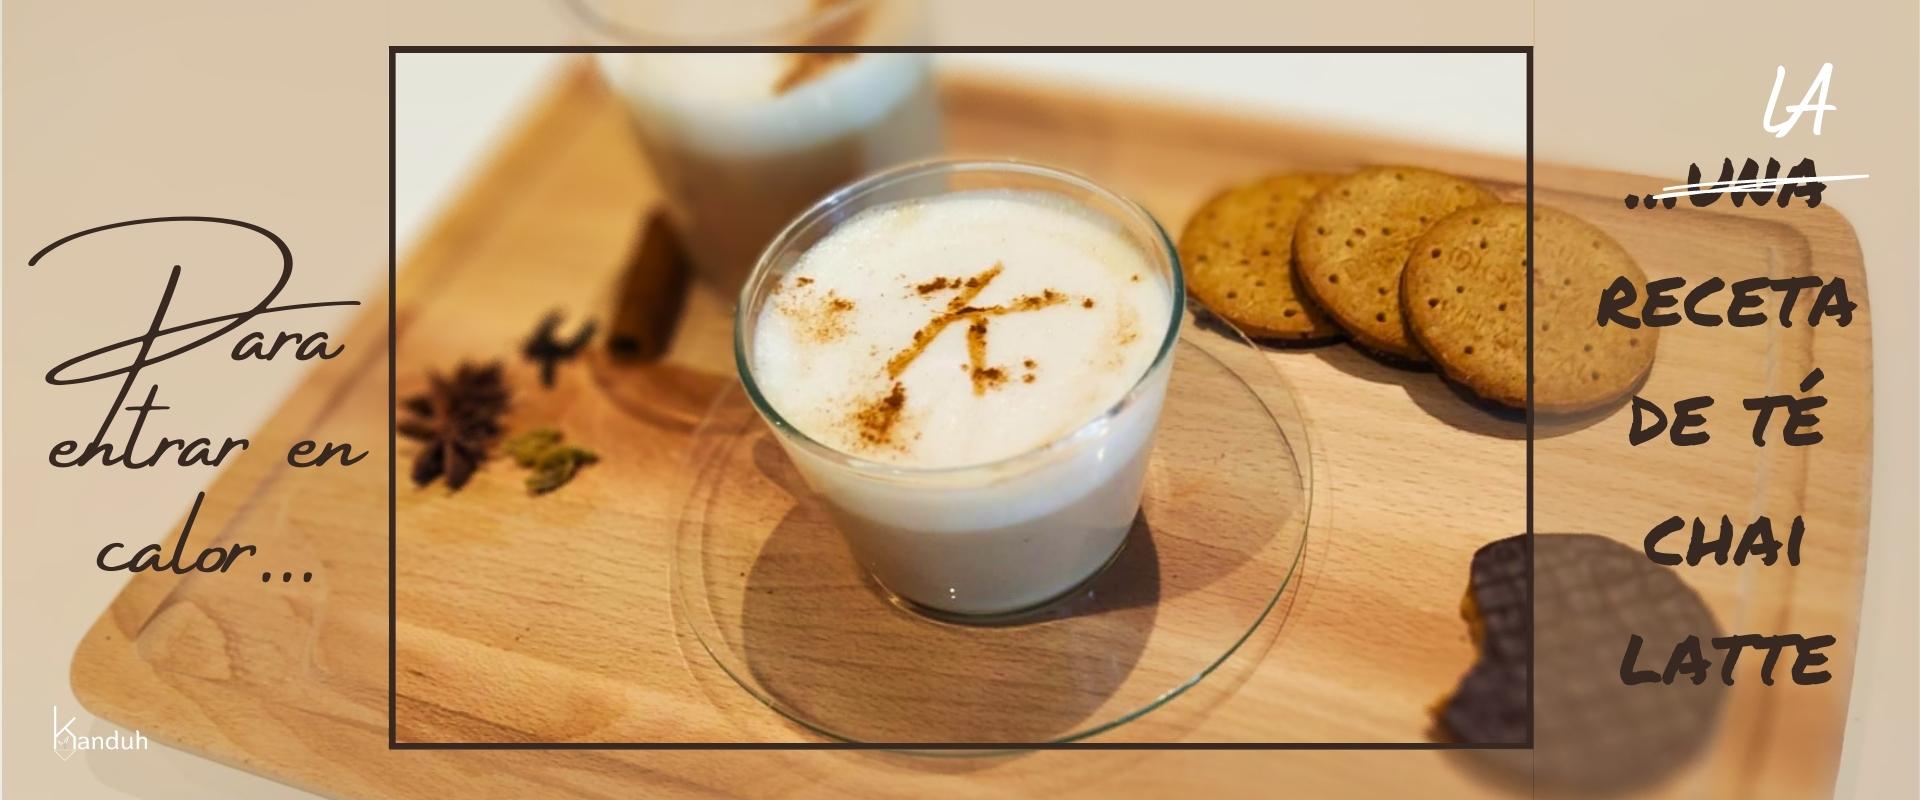 Para entrar en calor en estos días de frío ¡LA receta de té chai latte –  Kanduh